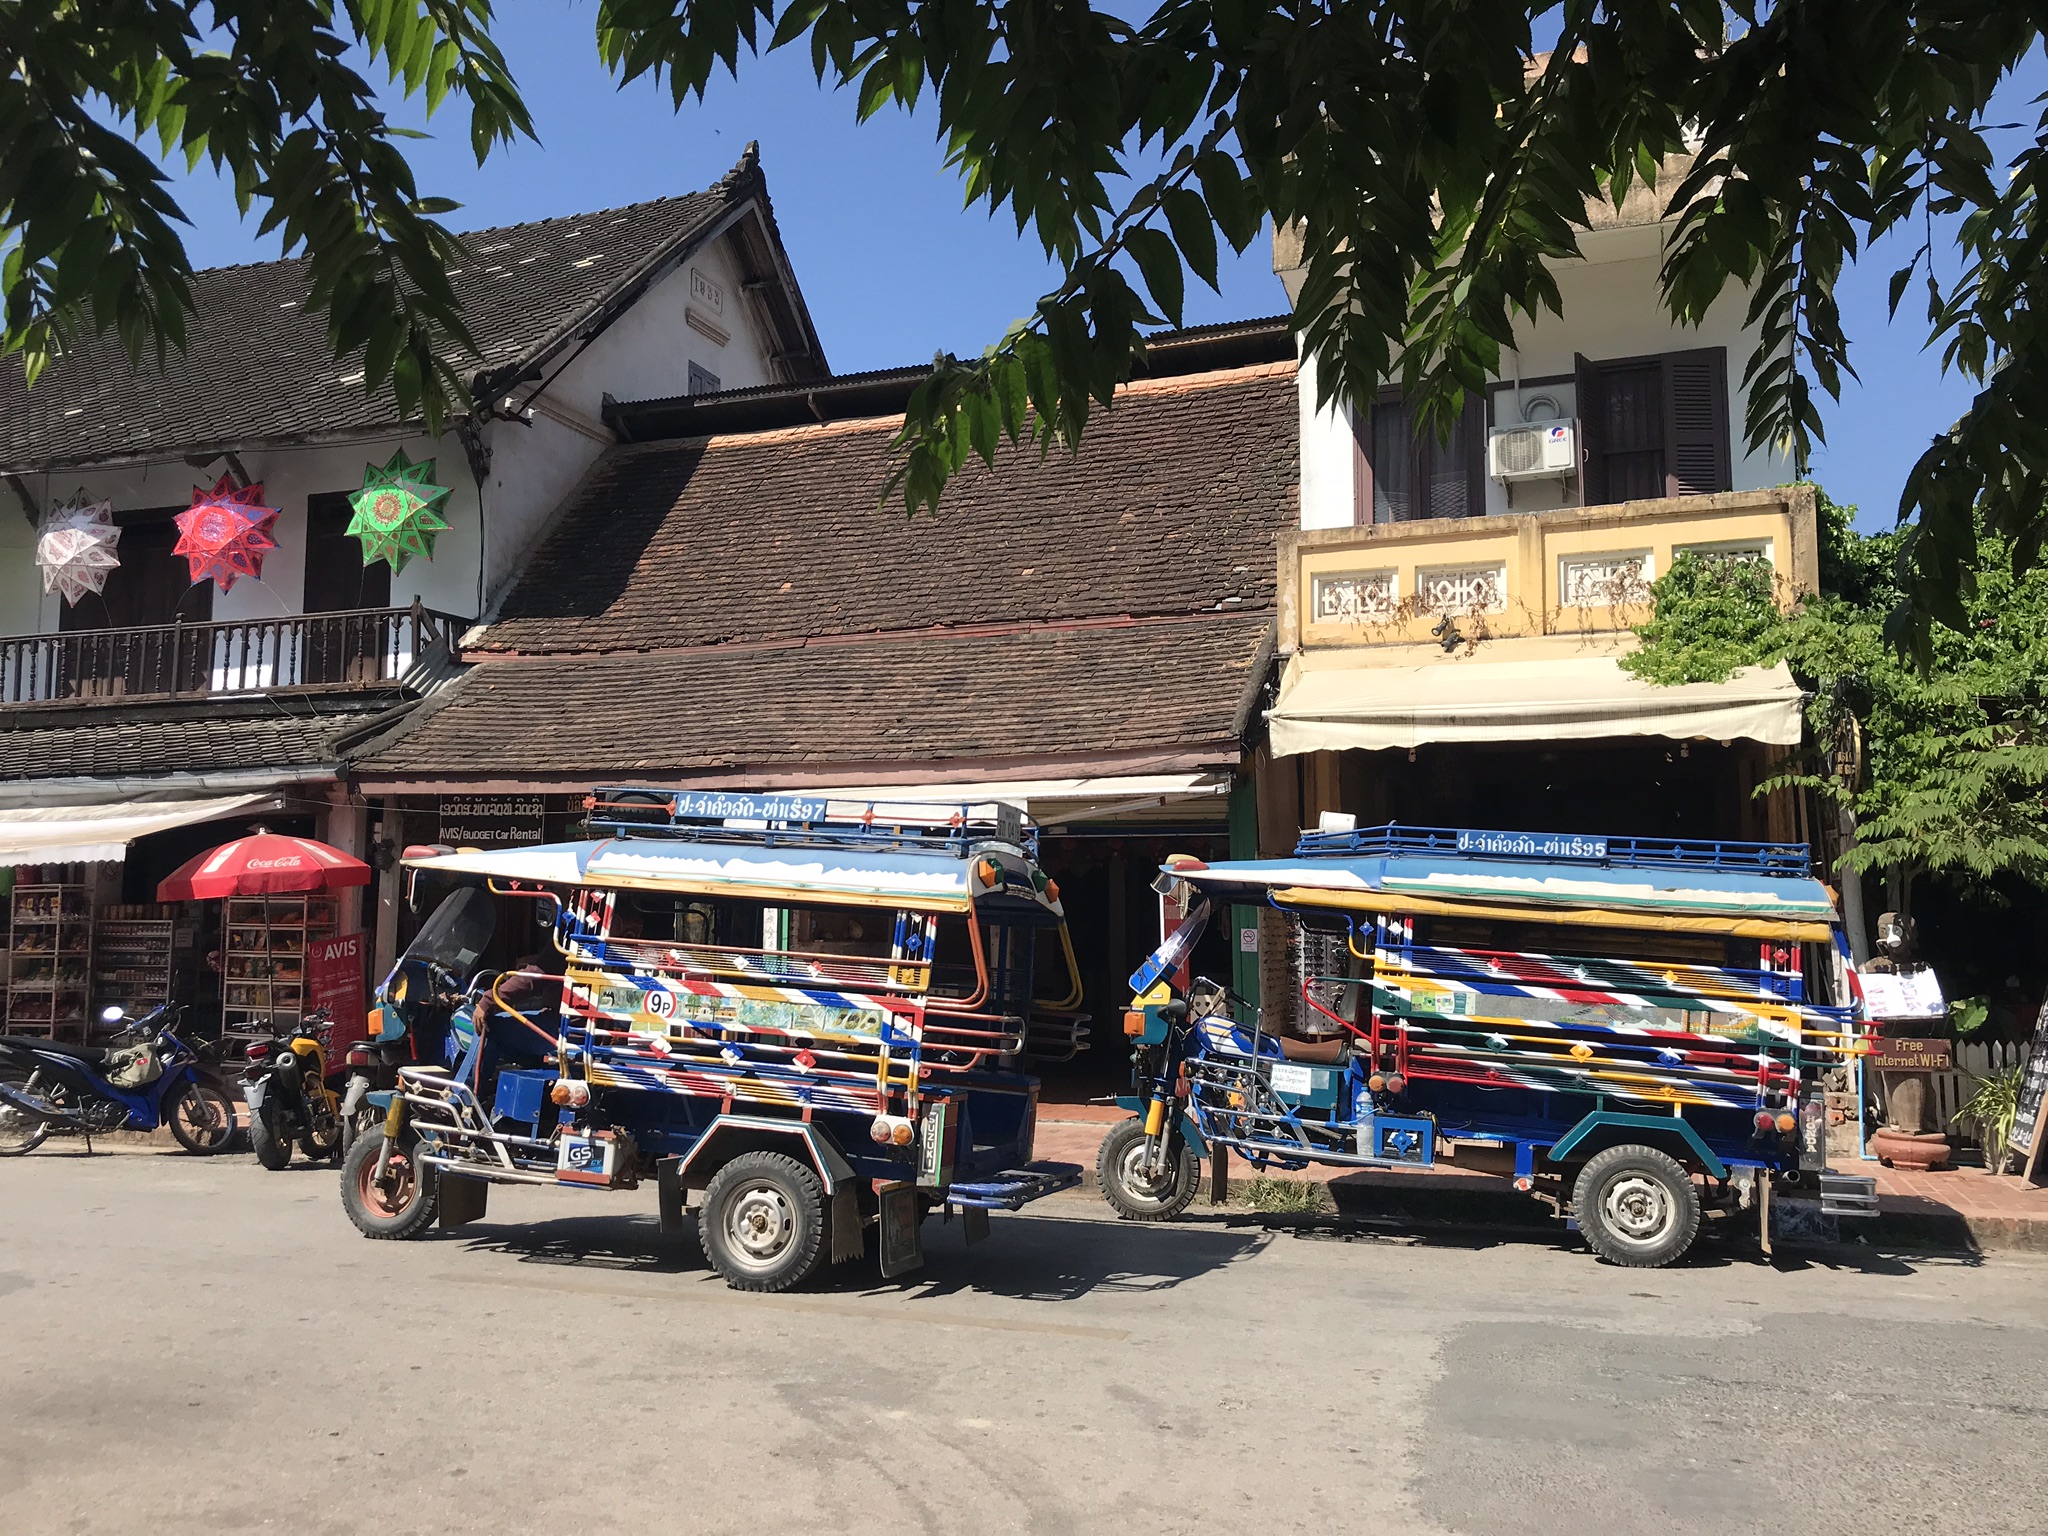 1. Luang Prabang